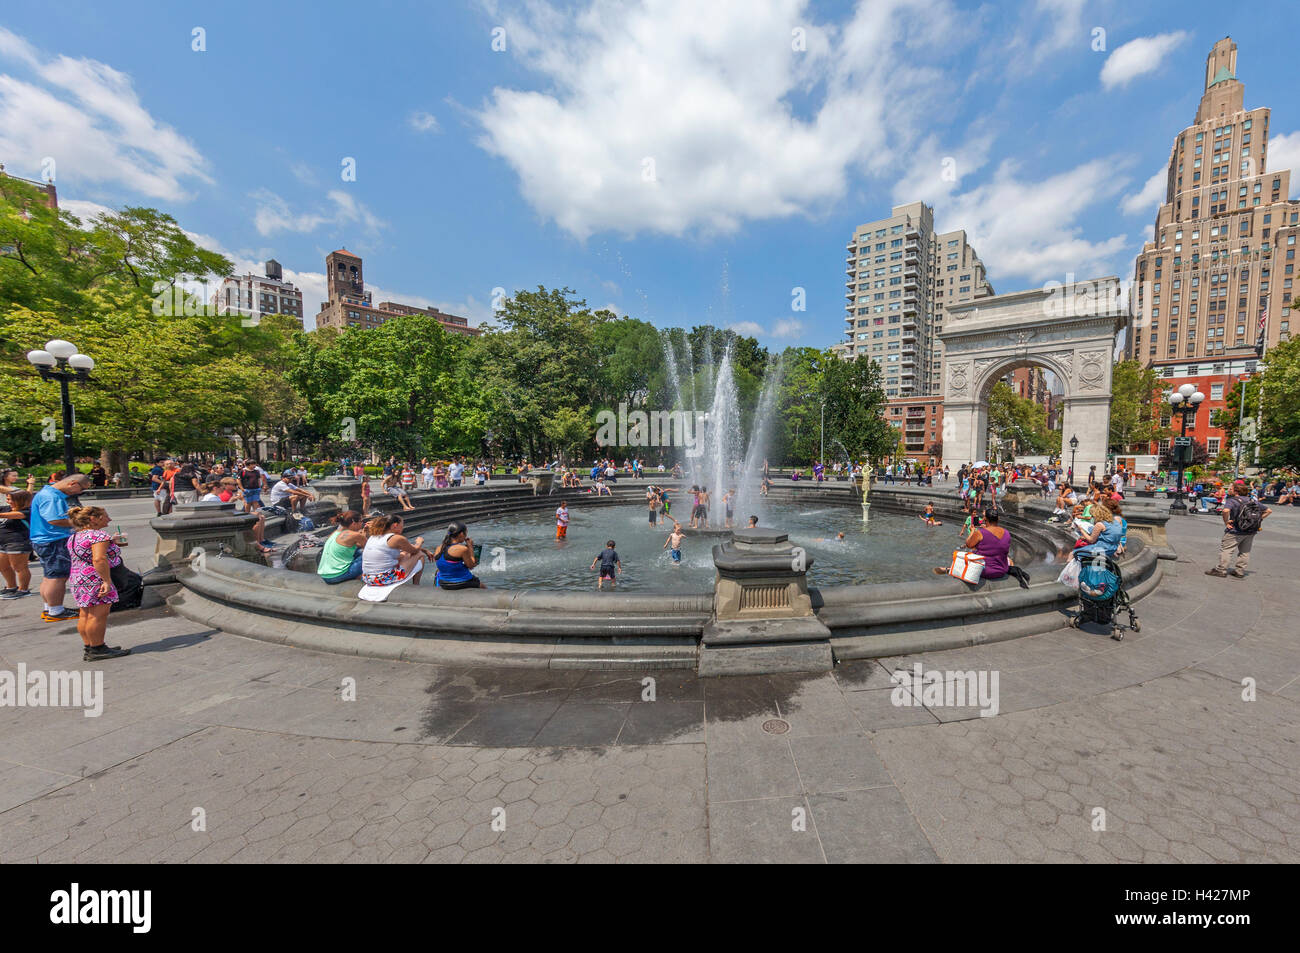 L'Arche de Washington Square Park, à New York et des personnes jouant dans l'eau de la fontaine. Banque D'Images